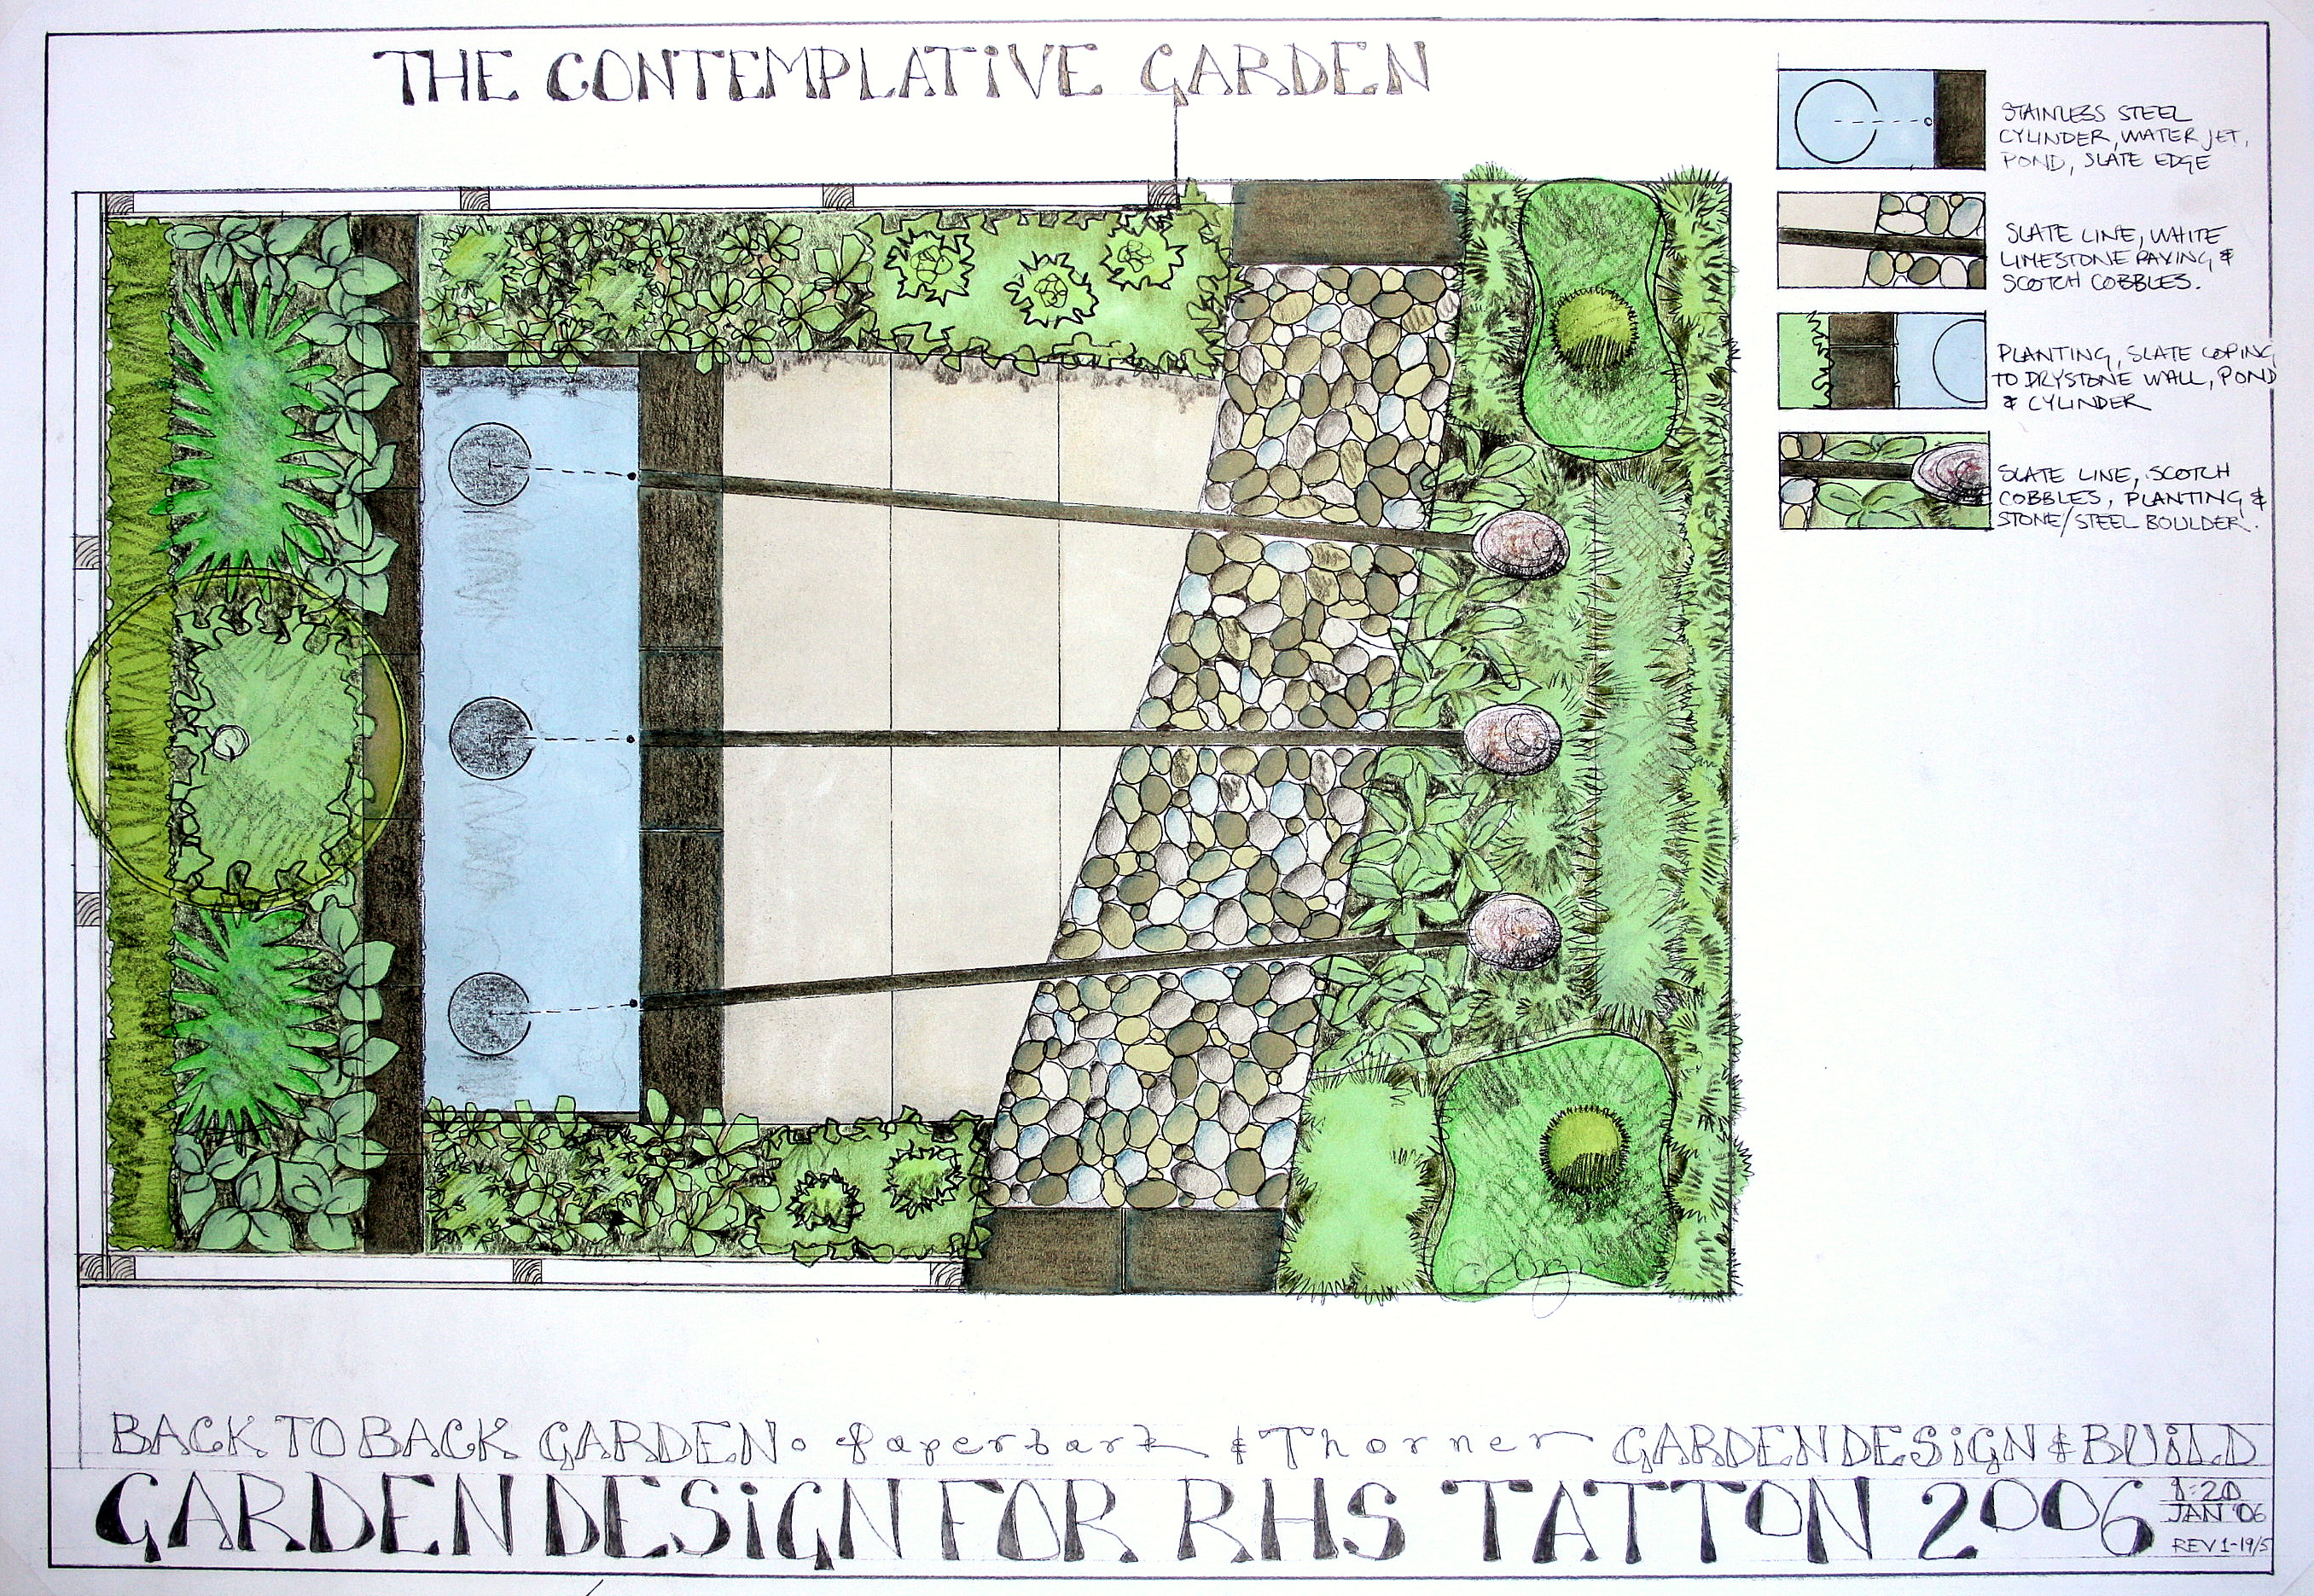 Garden design plan for show garden at RHS Tatton